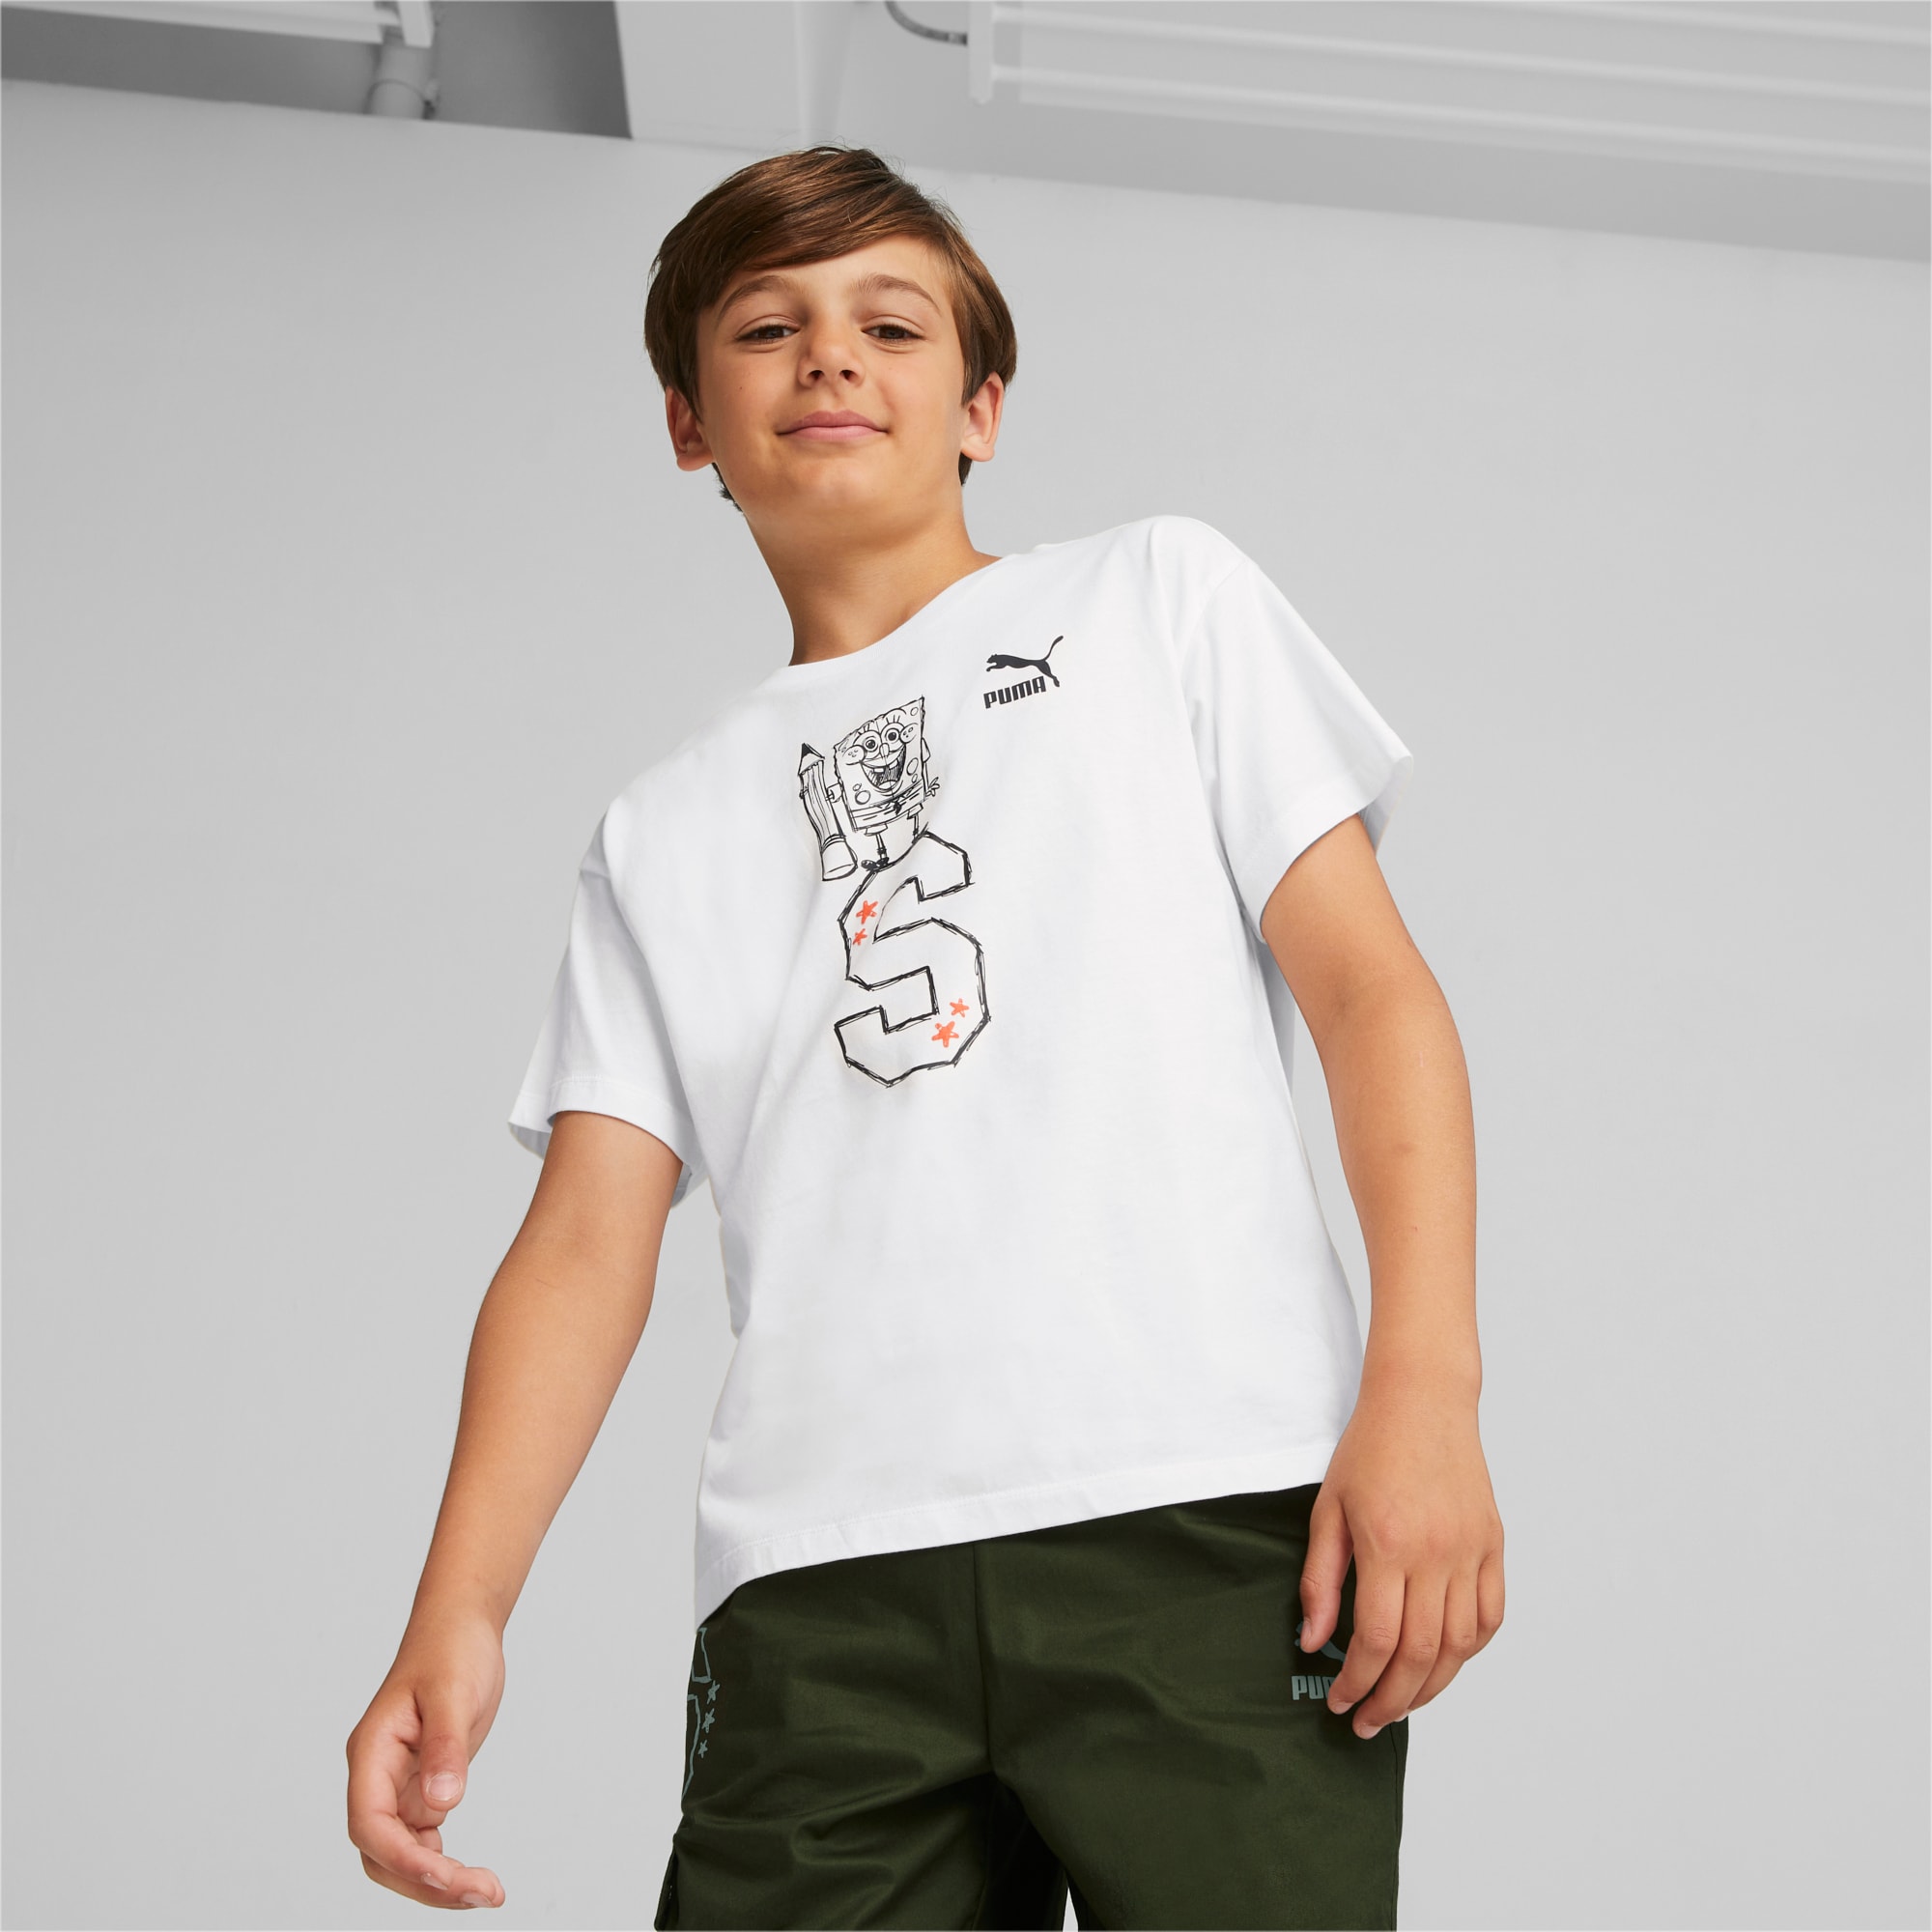 PUMA X SPONGEBOB SCHWAMMKOPF Graphic T-Shirt Teenager Für Kinder, Weiß, Größe: 128, Kleidung